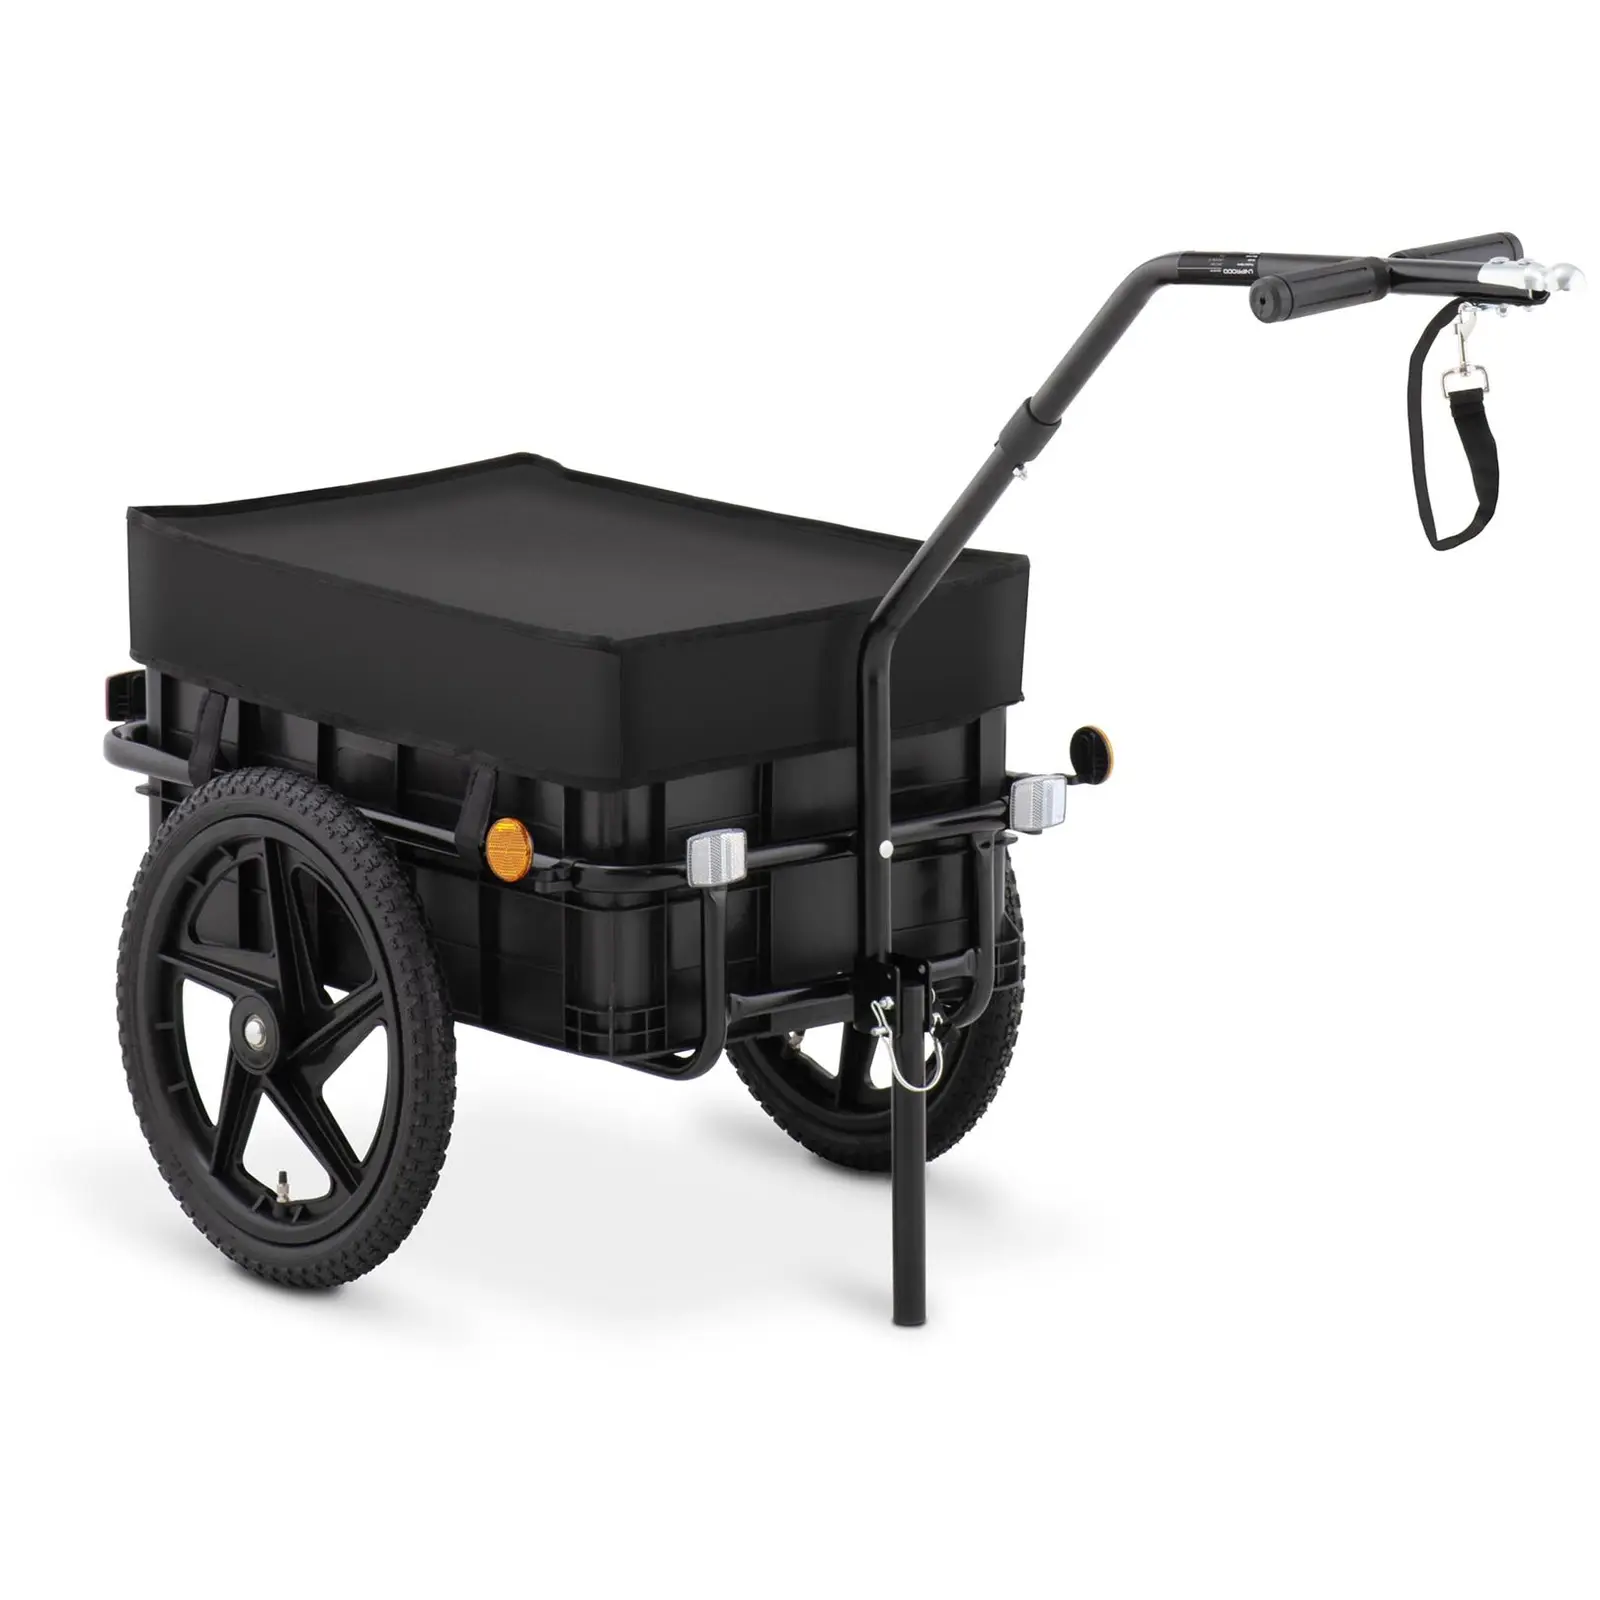 Nákladní vozík za kolo - 35 kg - odrazky - plachta